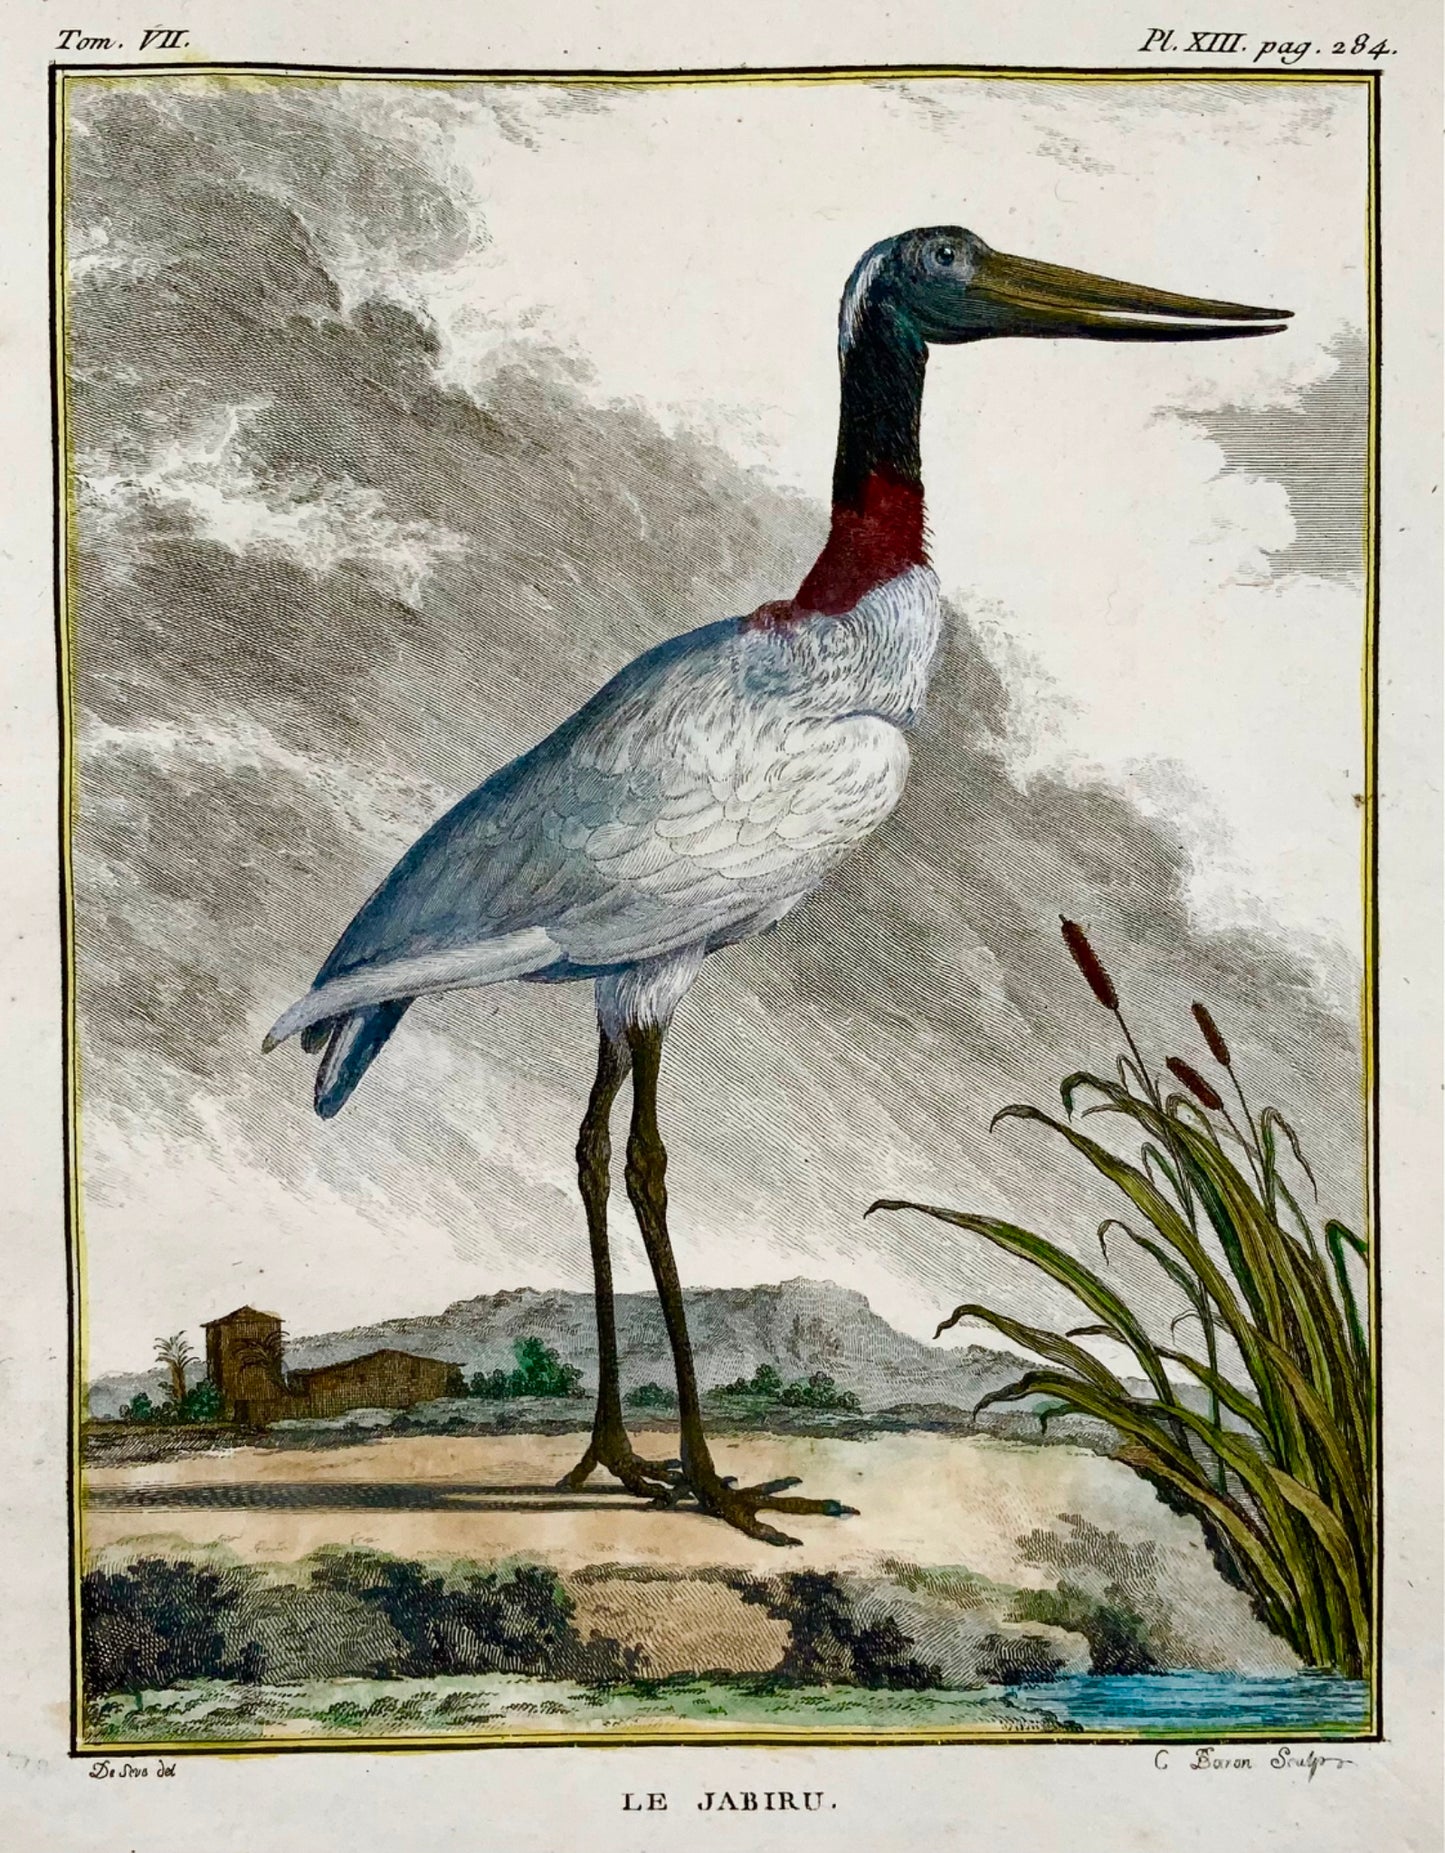 1779 de Seve - Uccello JABIRU - Ornitologia - 4to Grande incisione Edn